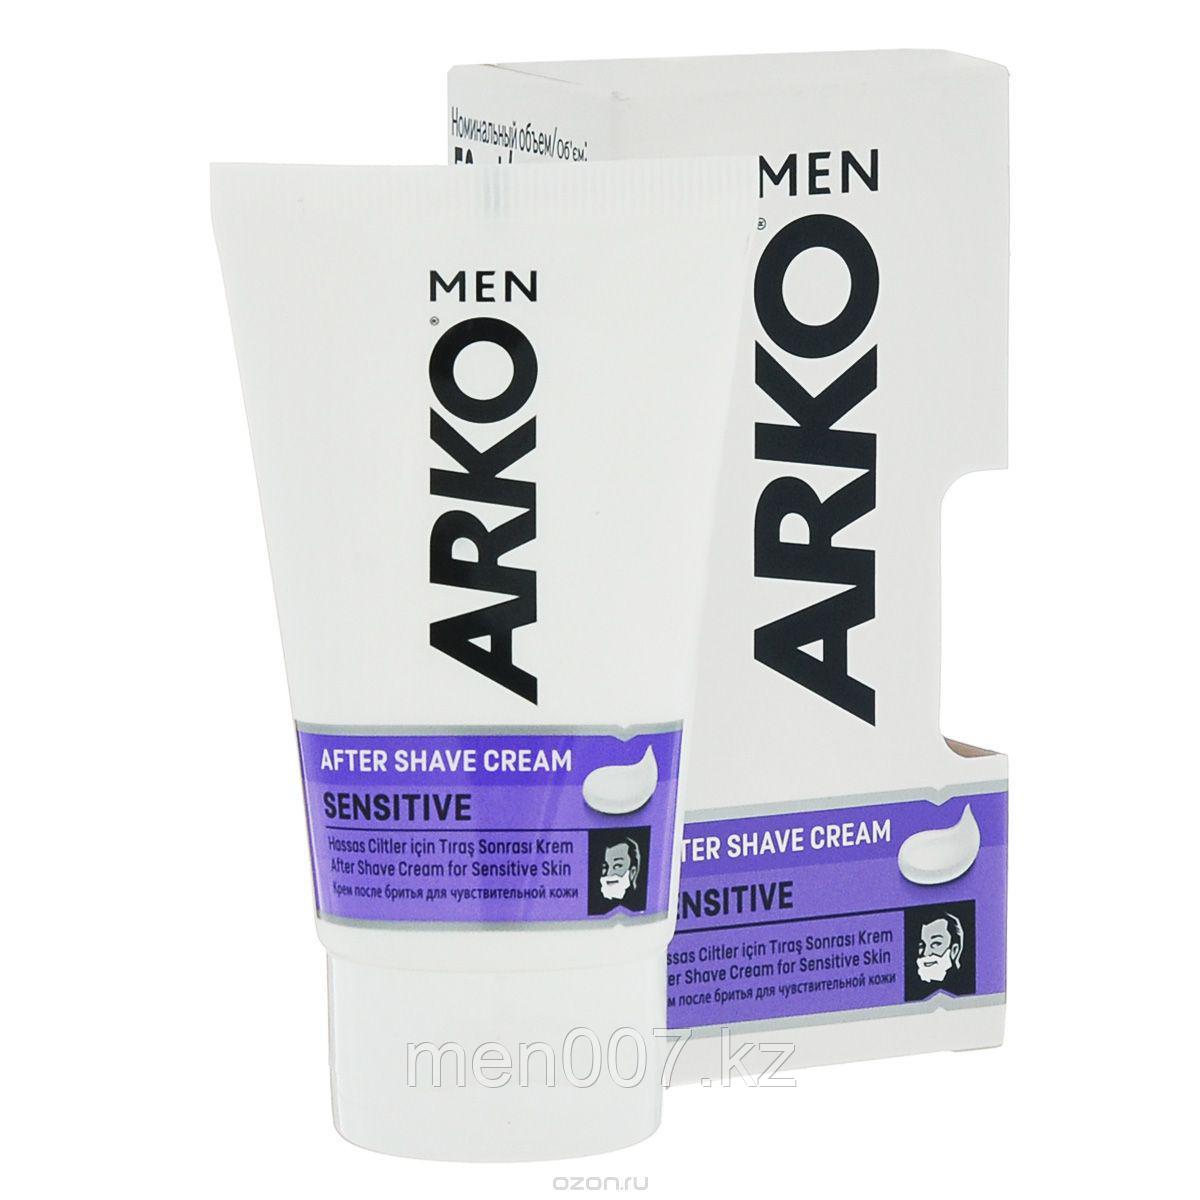 ARKO Sensitive (крем после бритья) (для чувствительной кожи) 50 мл.